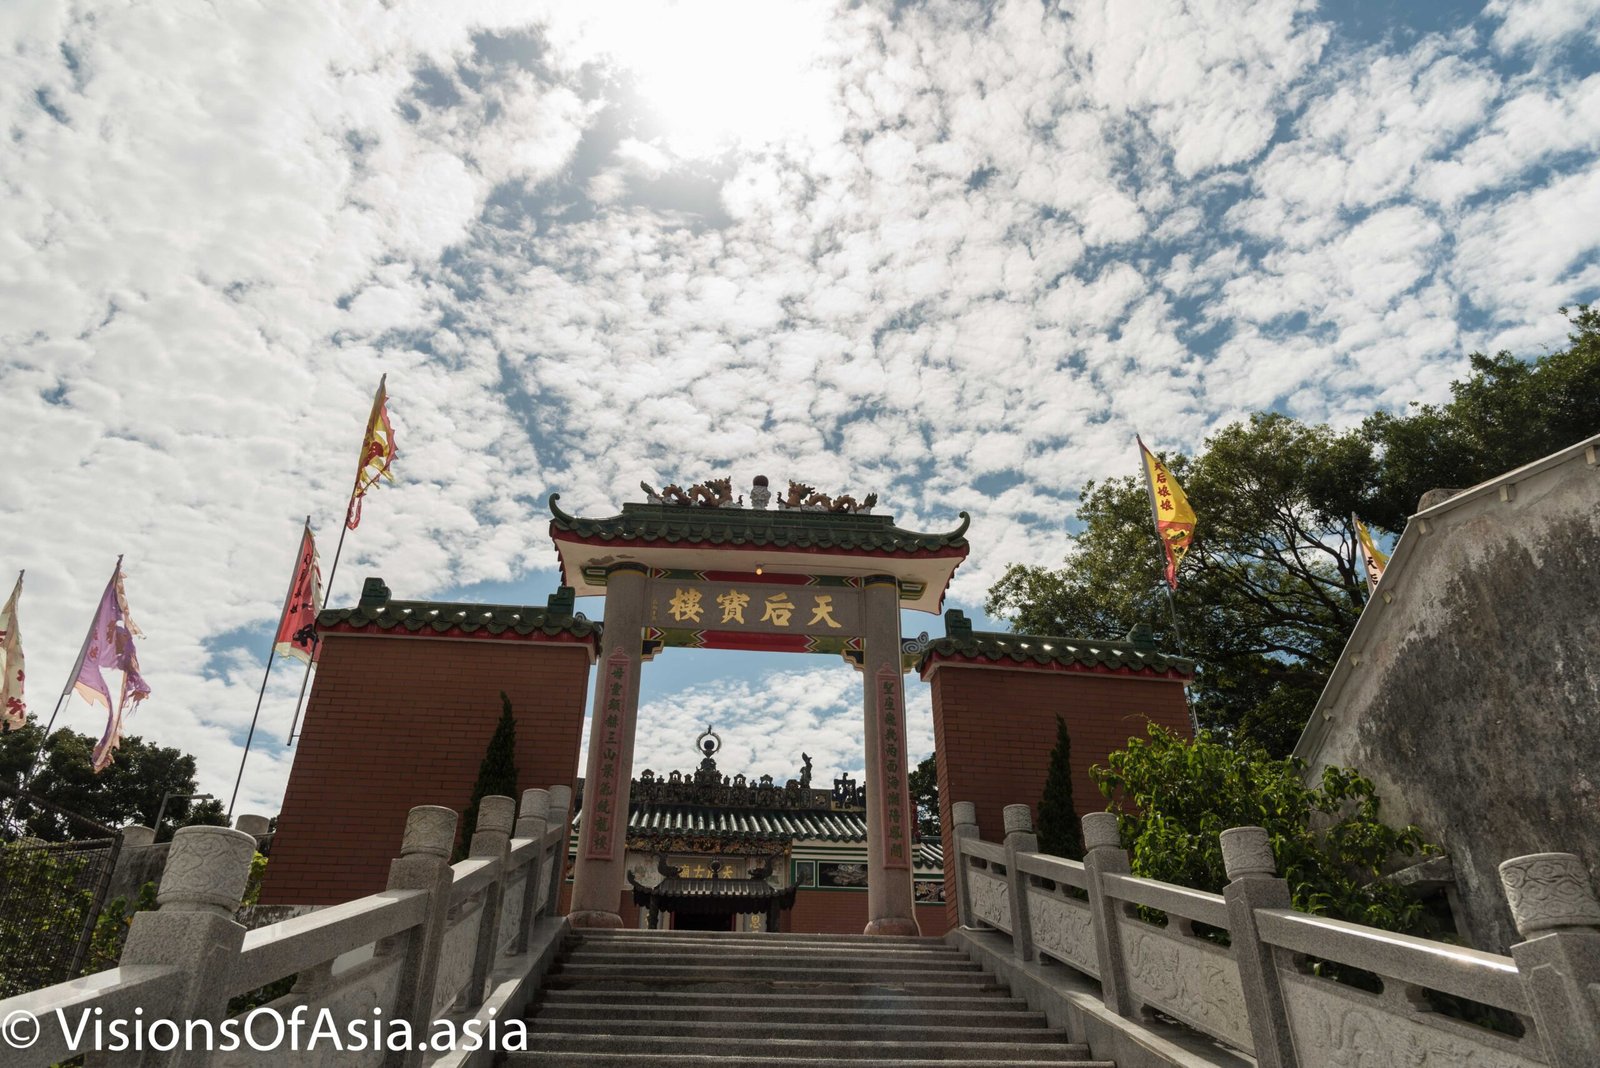 Entrance of Tin Hau Temple in Tap Mun